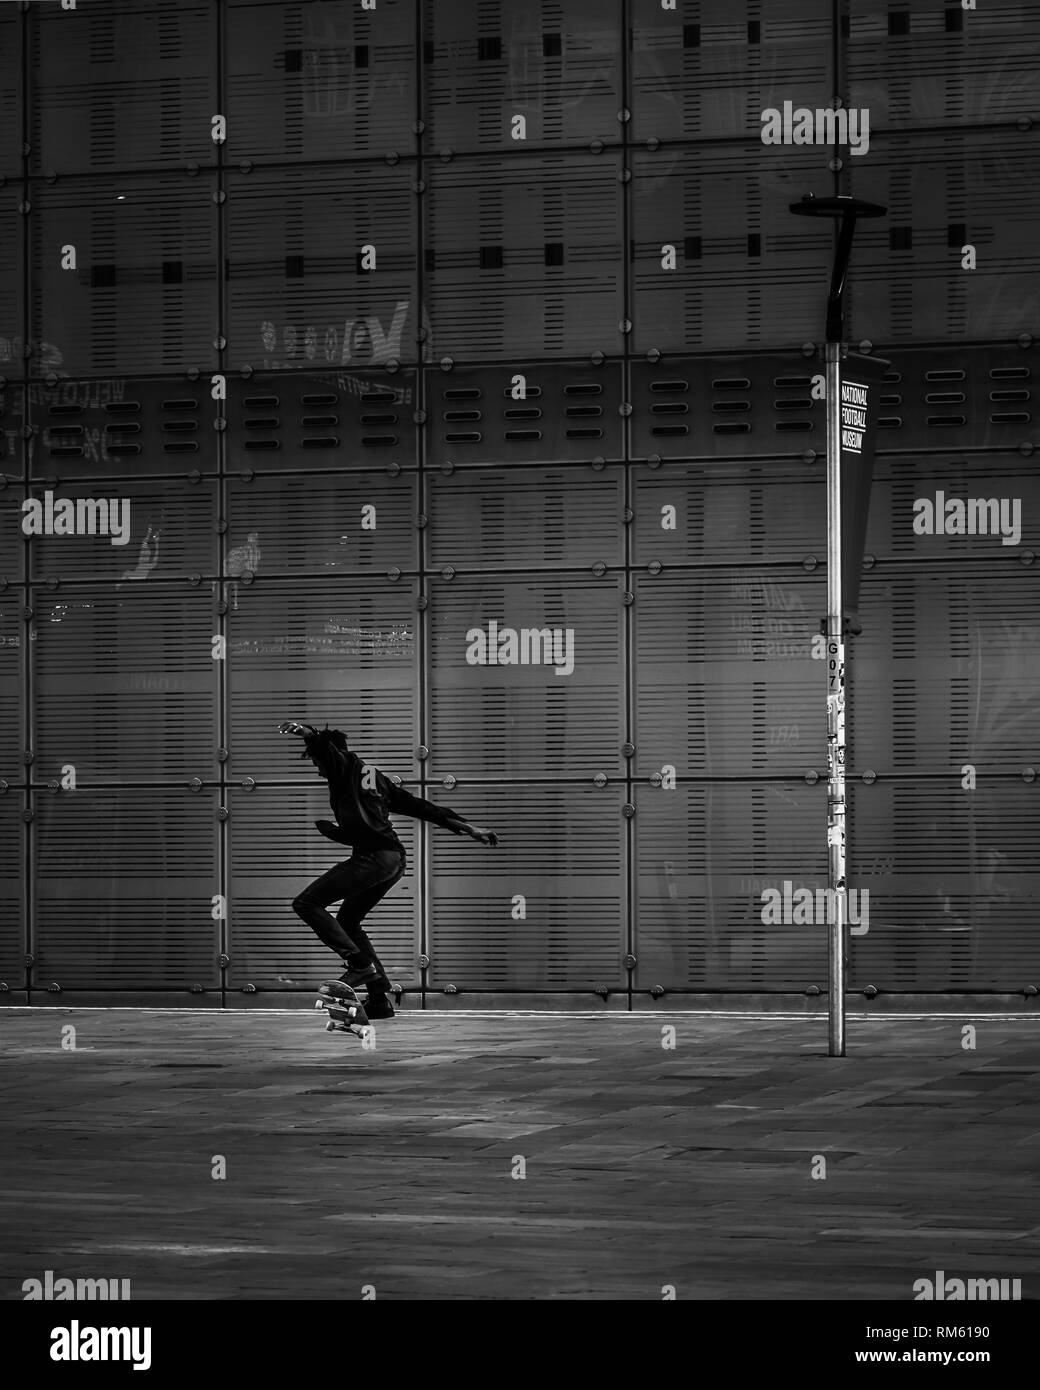 La silhouette d'un skateur professionnel effectue un tour de saut dans le centre de Manchester en noir et blanc Banque D'Images